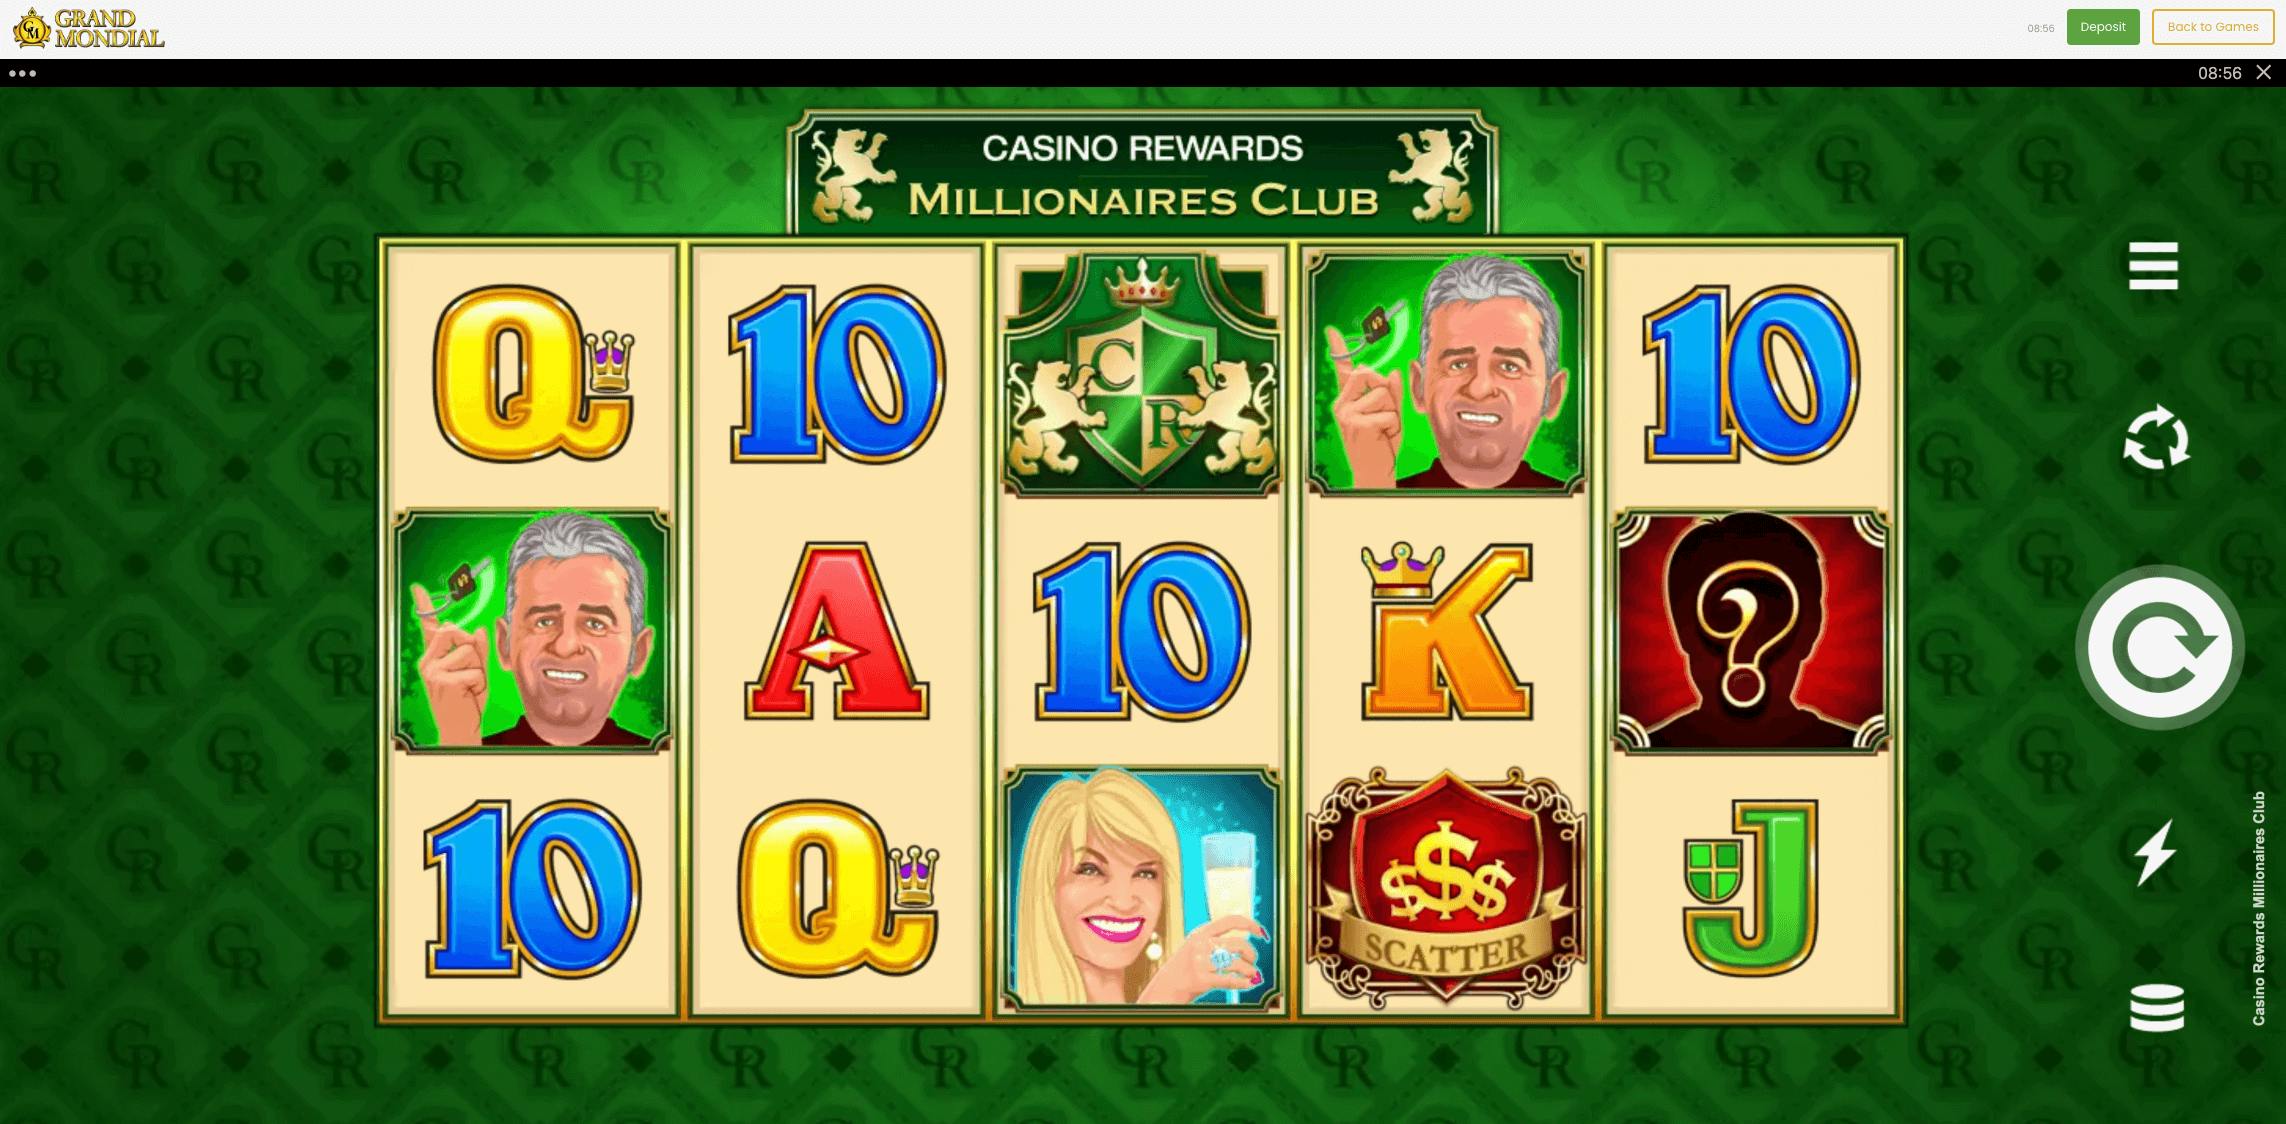 casino rewards casinos and millionaires club